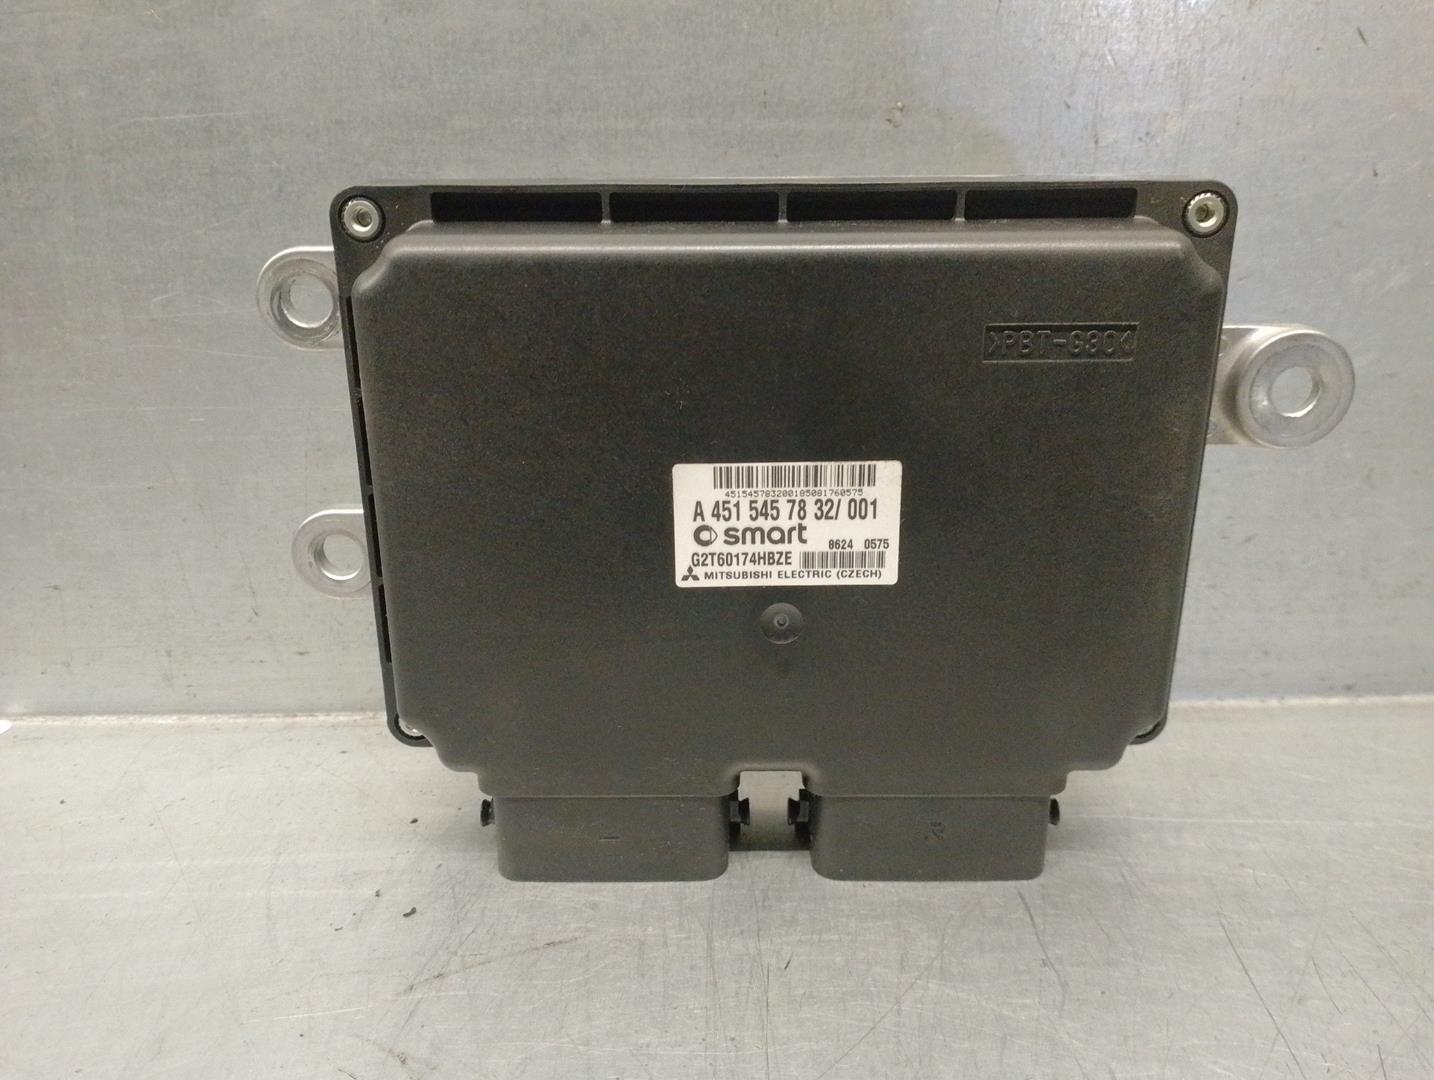 SMART Fortwo 2 generation (2007-2015) Gearbox Control Unit A4515457832, G2T60174HBZE 24187308